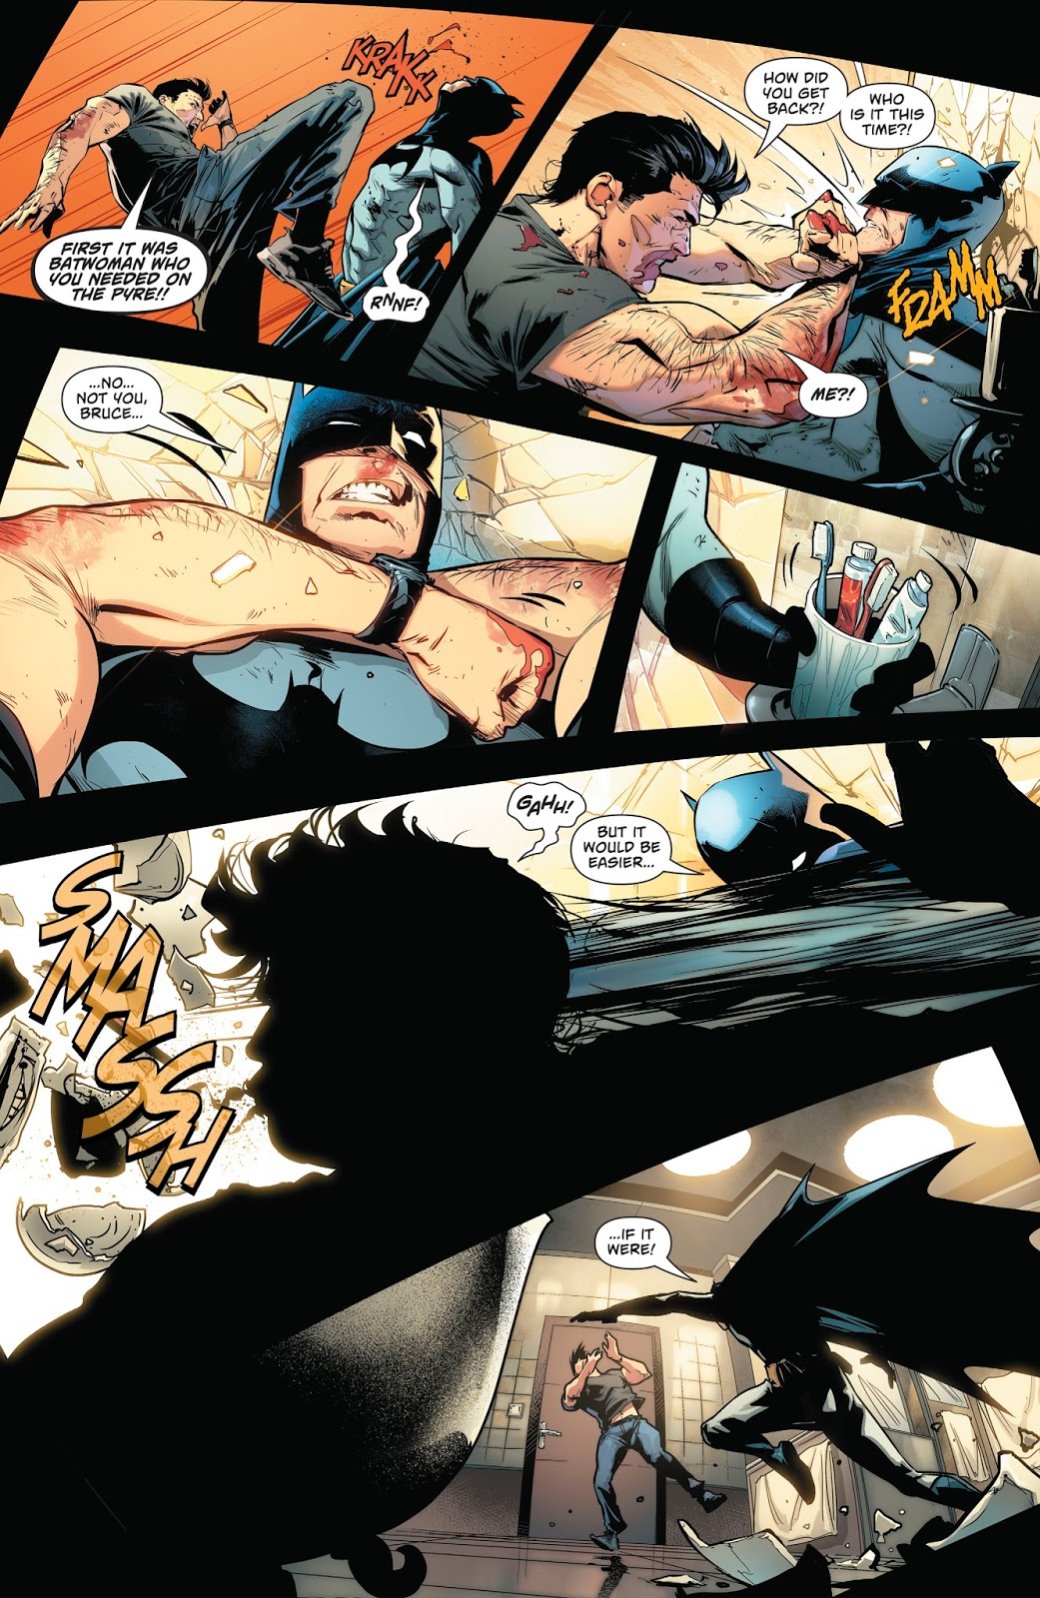 Галерея Все ненавидят Супербоя: почему Бэтмен из будущего хочет убить сына Супермена? - 4 фото